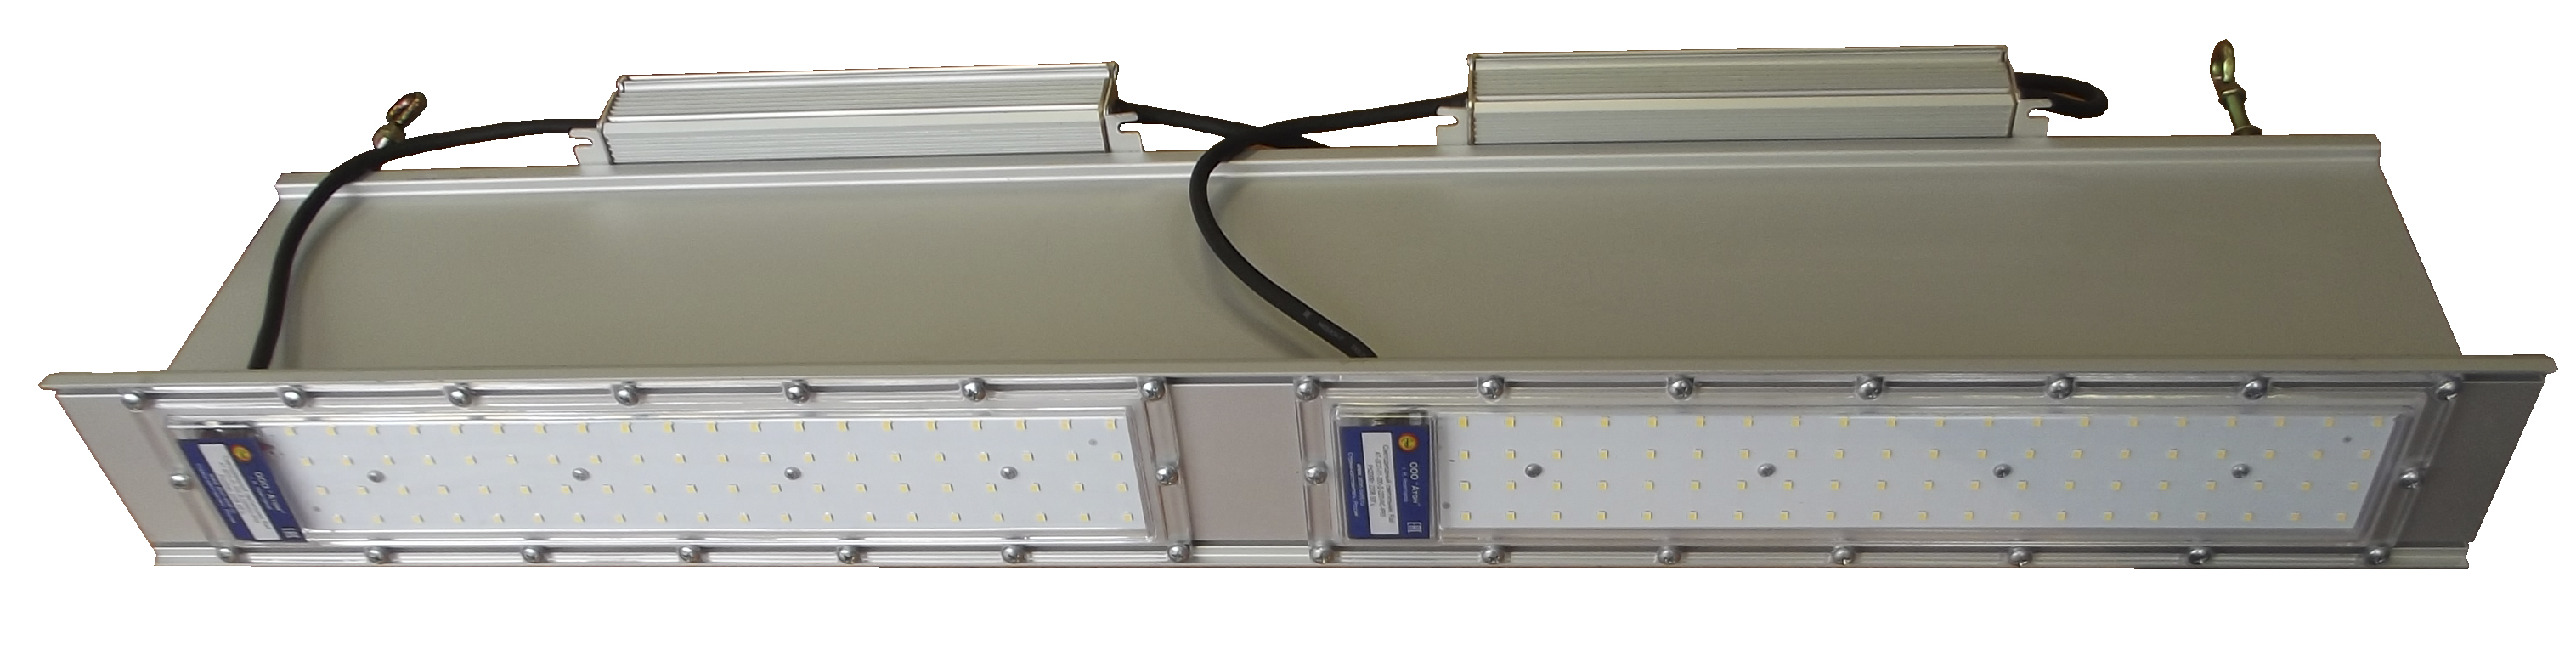 Мощные промышленные светильники АТ-ДСП-01 серии RAIL от компании Атон (Превью)